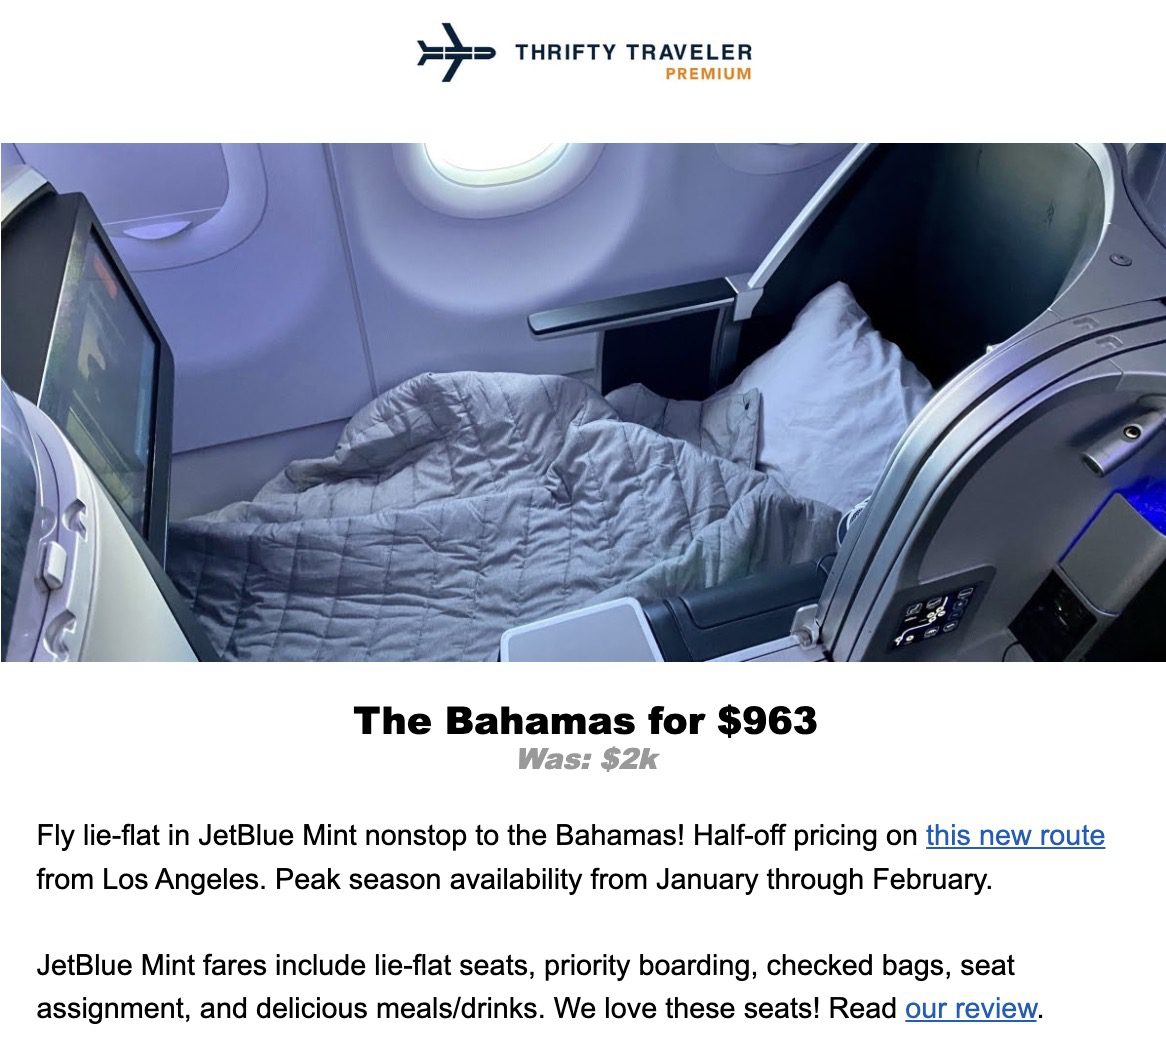 JetBlue Mint to the Bahamas